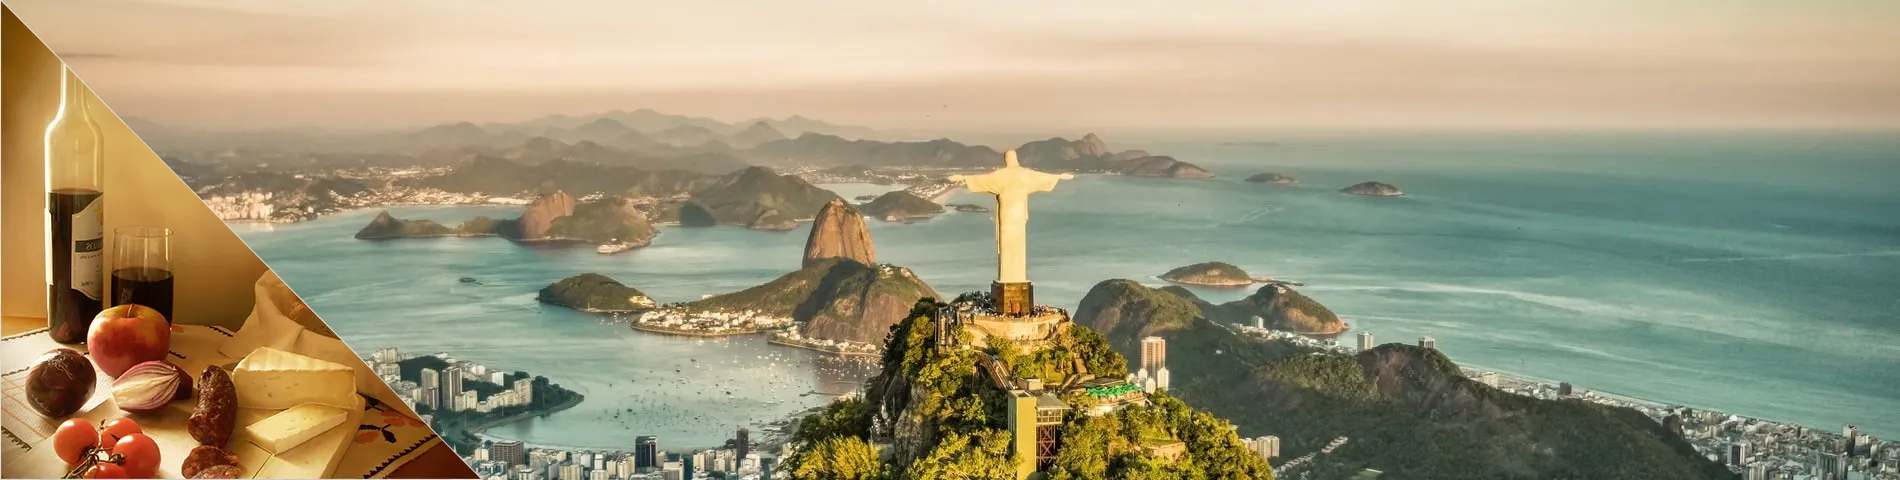 里约热内卢 - 葡萄牙语和文化课程